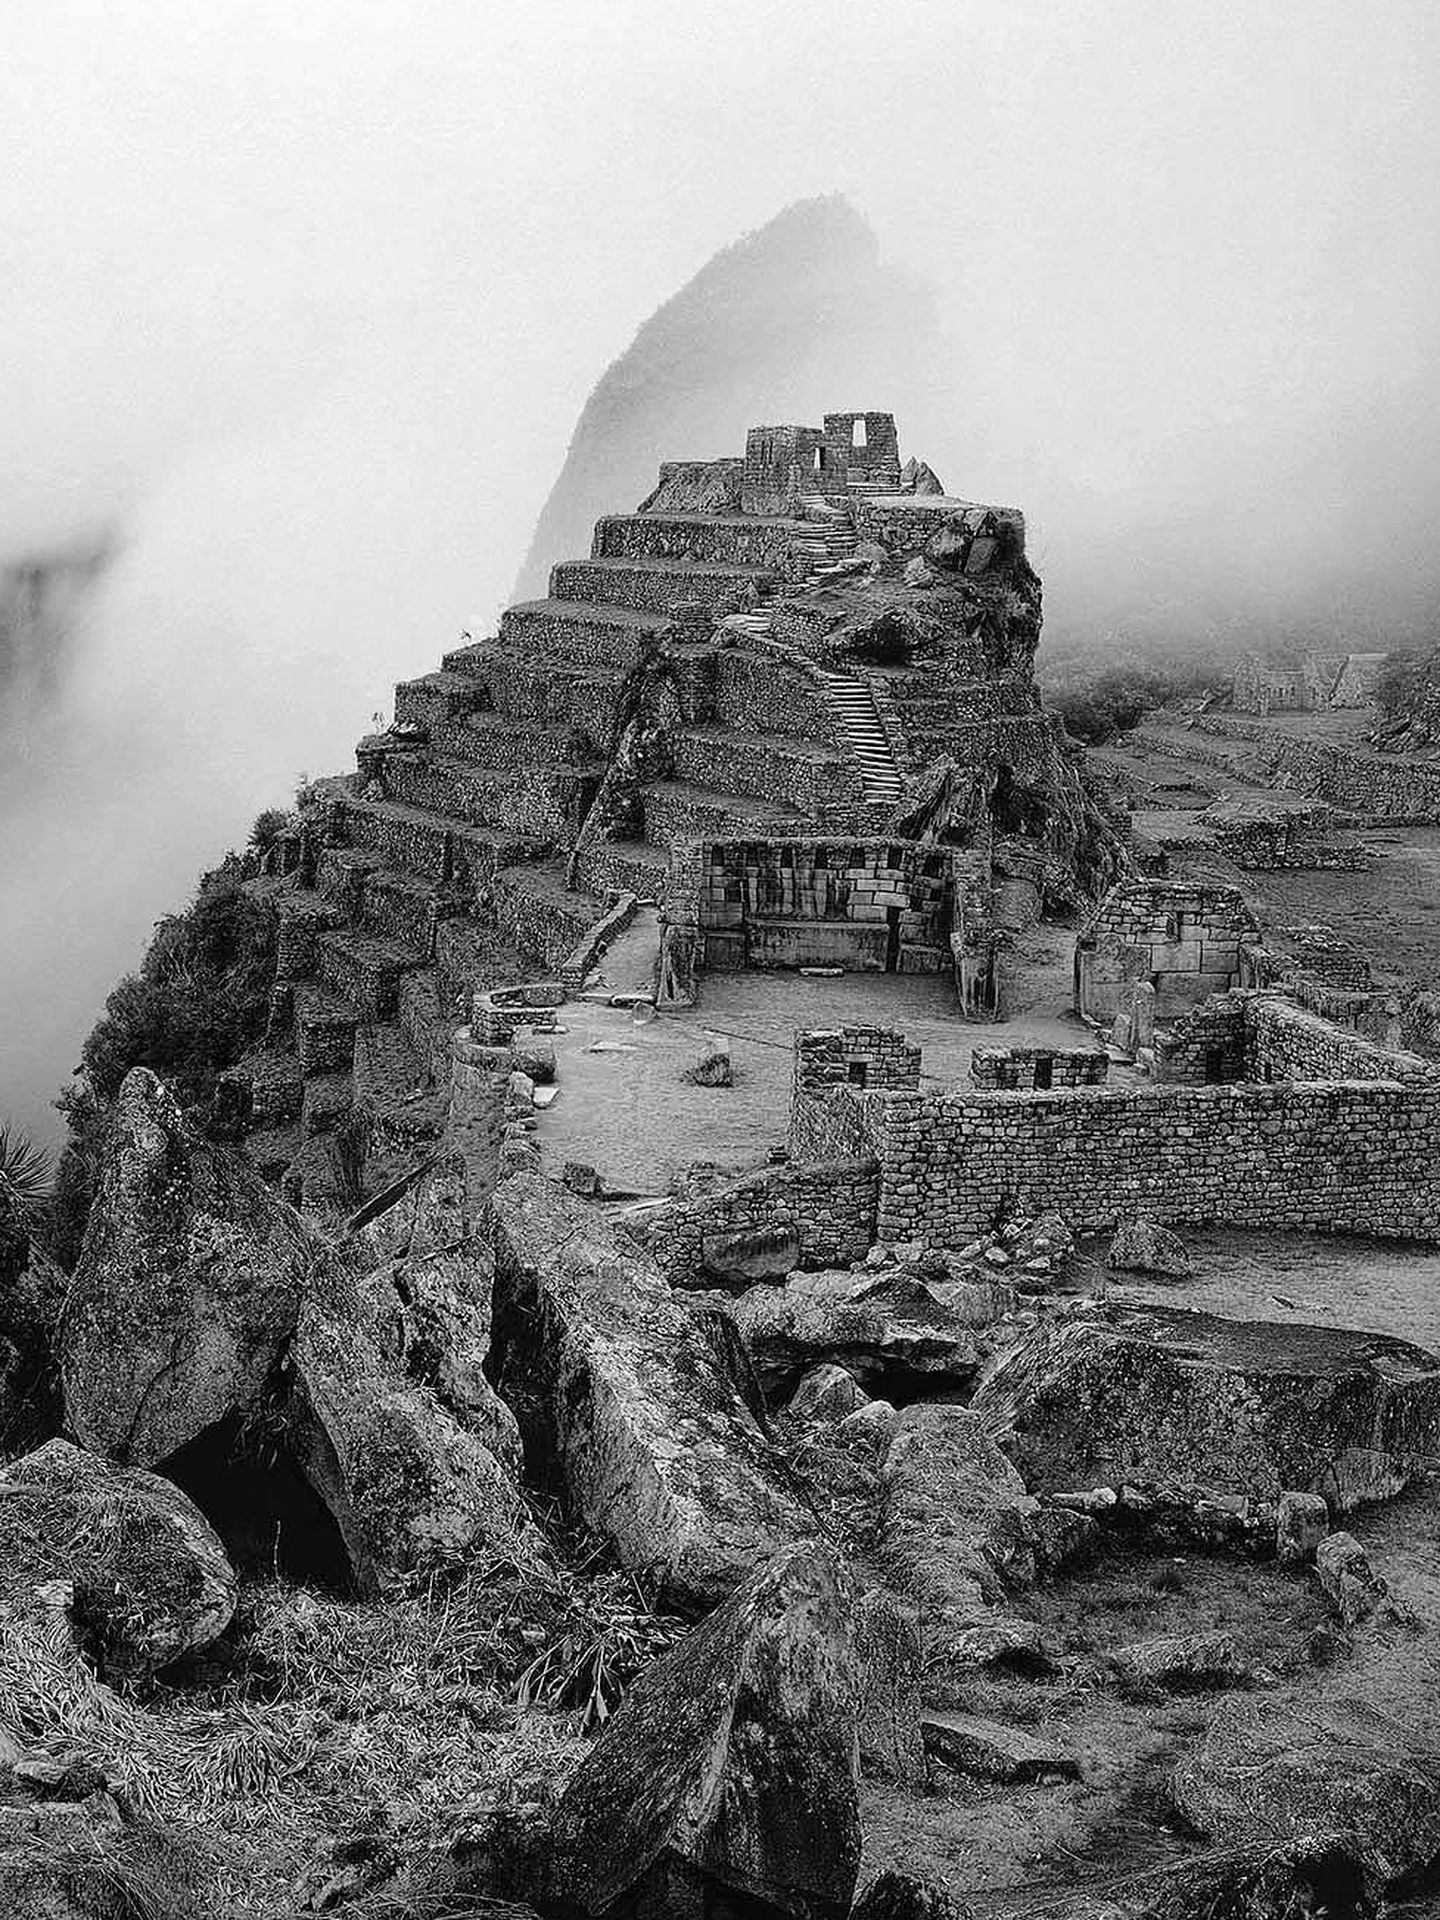 (((ACOMPAÑA CRÓNICA PERÚ-MACHU PICCHU ))) LIM04. LIMA (PERÚ), 26/06/2011.- Fotografía de Linda Connor (New York, 1944), Machu Picchu Perú, 1984, cedida por el Instituto Cultural Peruano Norteamericano (ICPNA), que forma parte de la exposición fotográfica 'Visiones de Machu Picchu' que se presenta en el ICPNA en Lima hasta el 14 de agosto. Aunque el norteamericano Hiram Bingham se ha llevado la gloria mundial por haber 'descubierto' la ciudadela inca de Machu Picchu, todas las evidencias históricas apuntan a que este famoso sitio arqueológico nunca estuvo perdido. EFE/Instituto Cultural Peruano Norteamericano (ICPNA)/SOLO USO EDITORIAL 